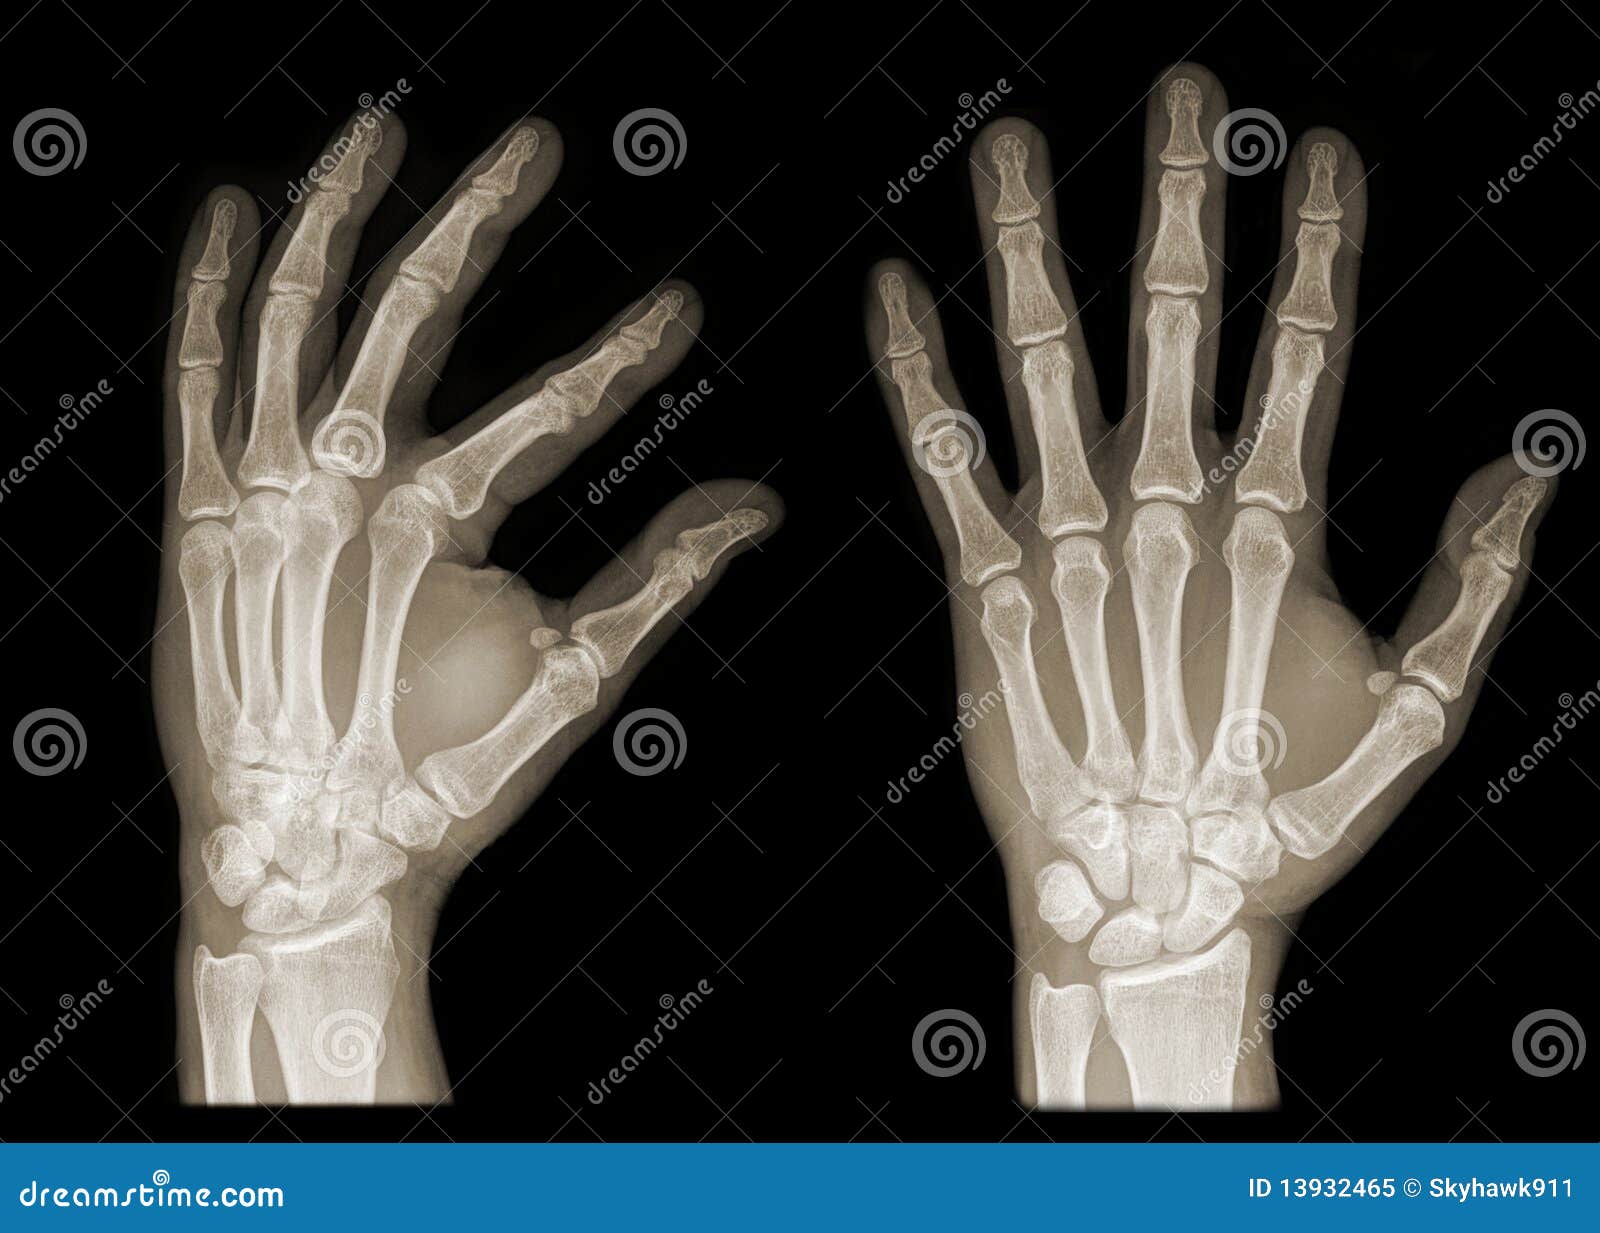 hand x ray clipart - photo #32